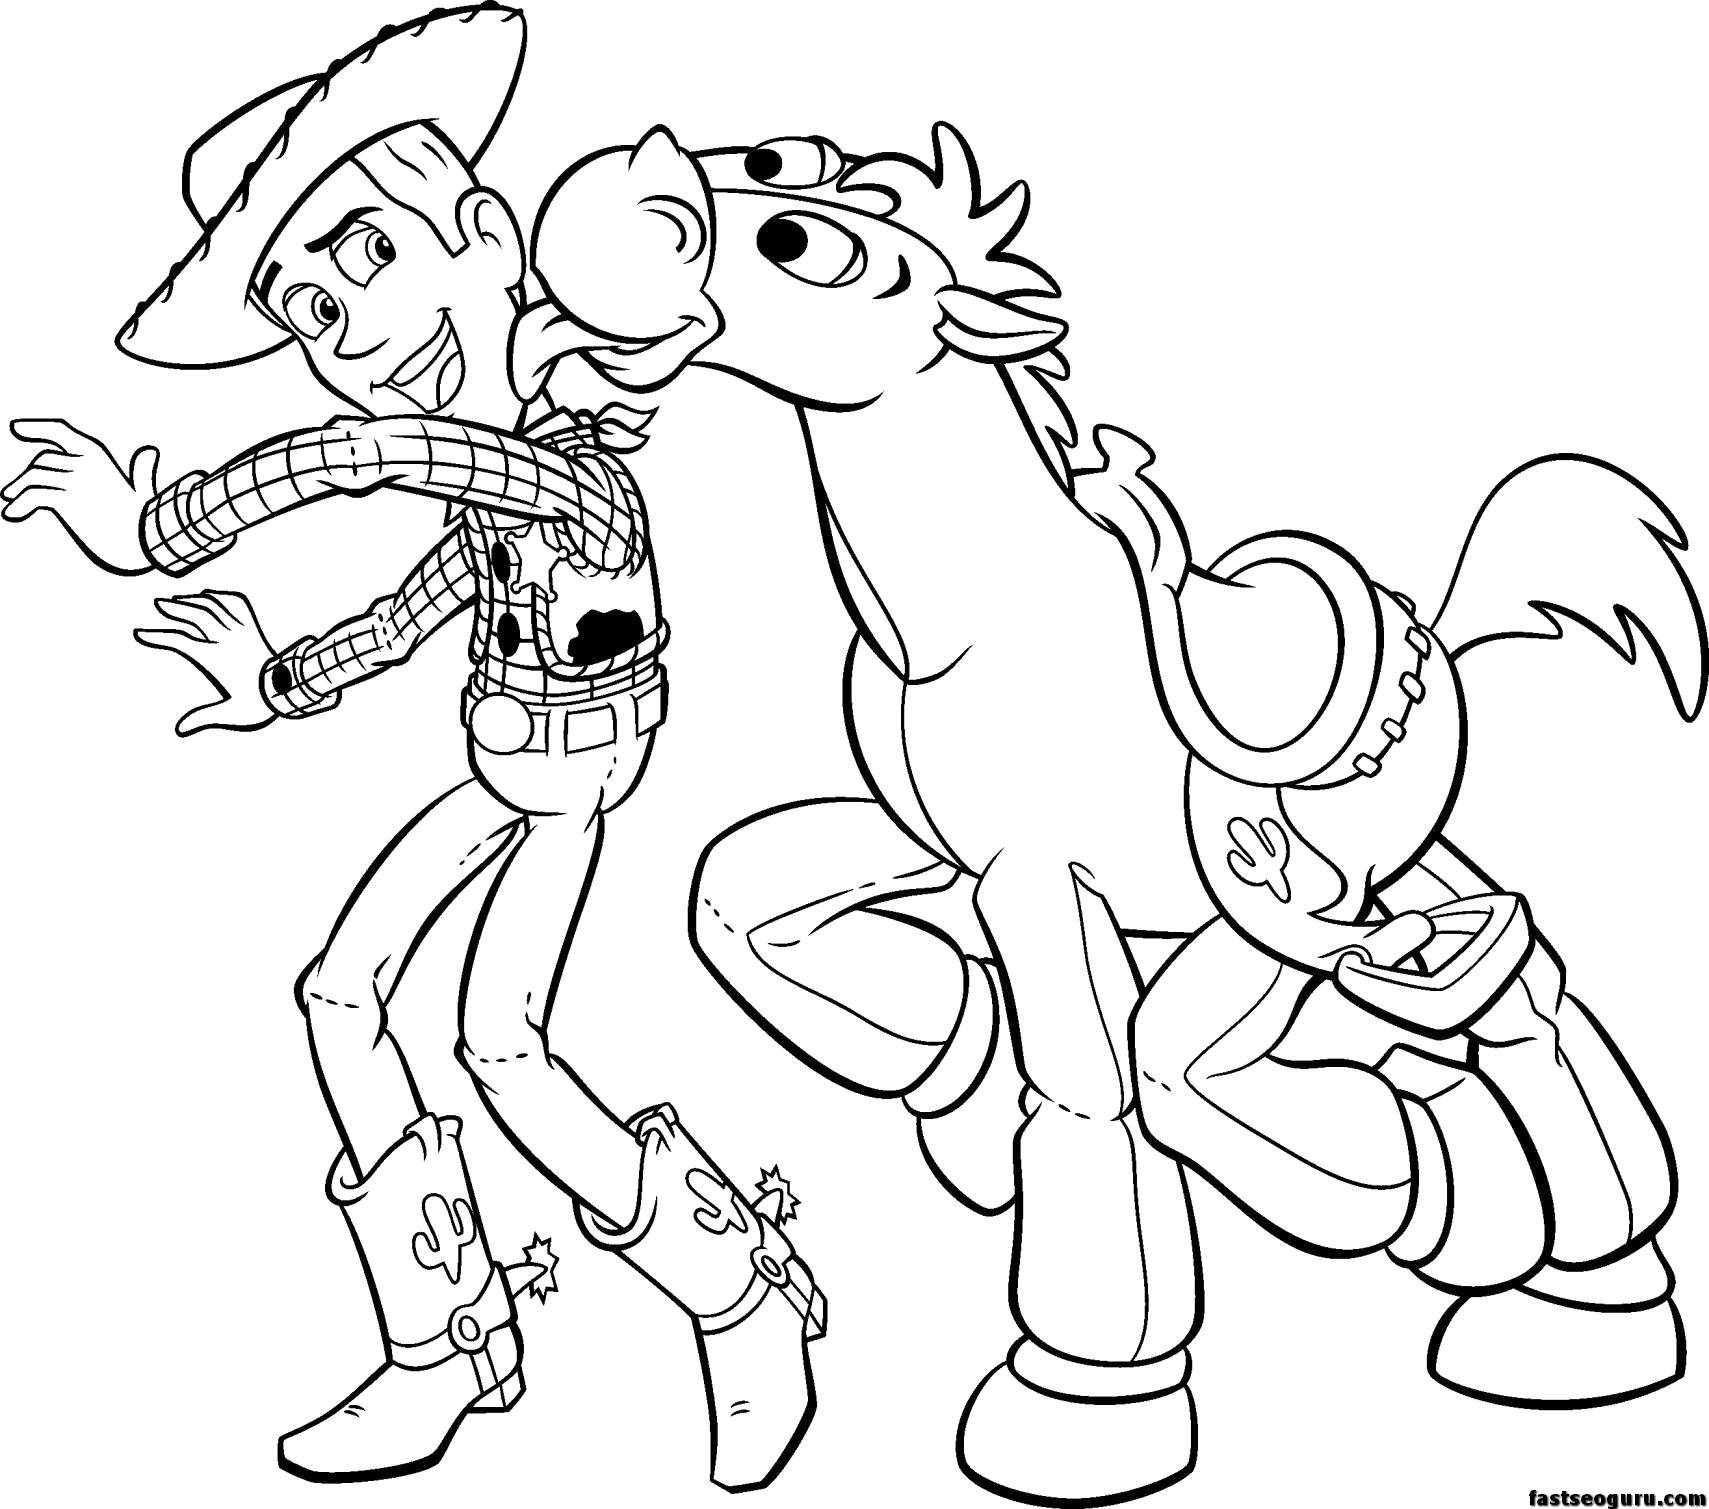 Опис: розмальовки  Шериф вуді з конем. Категорія: розмальовки. Теги:  Персонаж з мультфільму, Історія іграшок .